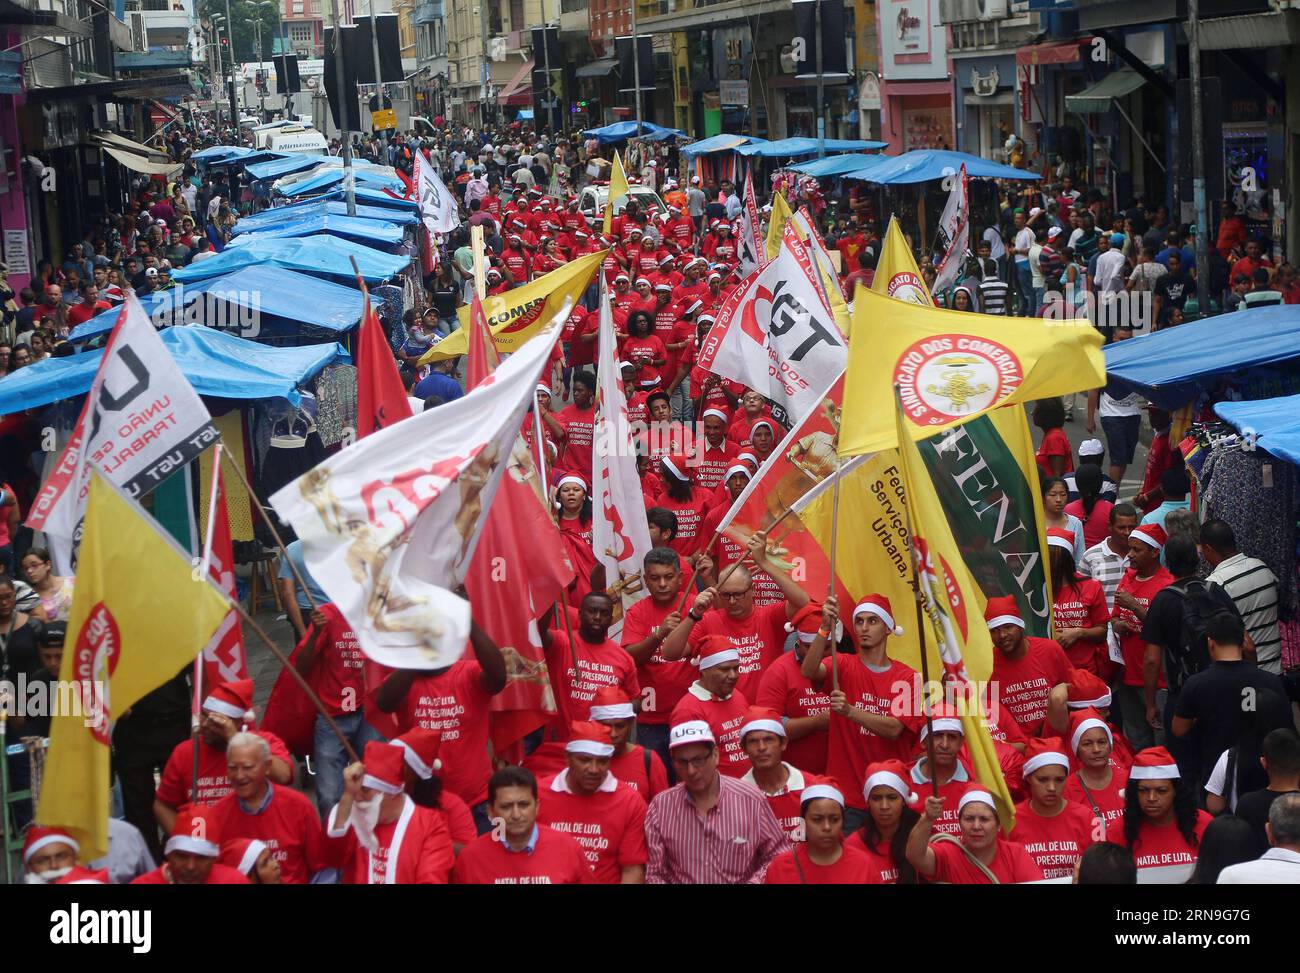 (151204) -- SAO PAULO, 4. Dezember 2015 -- Demonstranten in Weihnachtsmannkostümen protestieren gegen die Arbeitslosigkeit während einer Demonstration namens Christmas Fight for Conservation of Employees in the Trade in Sao Paulo, Brasilien, 4. Dezember 2015. Laut der lokalen Presse wurde der Protest von der Gewerkschaft organisiert, um gegen die Arbeitslosigkeit in diesem Sektor zu protestieren, die durch die Rezession und den Rückgang der Wirtschaftstätigkeit verursacht wurde. Rahel Patrasso) (jg) (fnc) BRASILIEN-SAO PAULO-SOCIETY-PROTEST e RahelxPatrasso PUBLICATIONxNOTxINxCHN 151204 Sao Paulo DEZ 4 2015 Demonstrantin in Kostümen des Santa Claus Prote Stockfoto